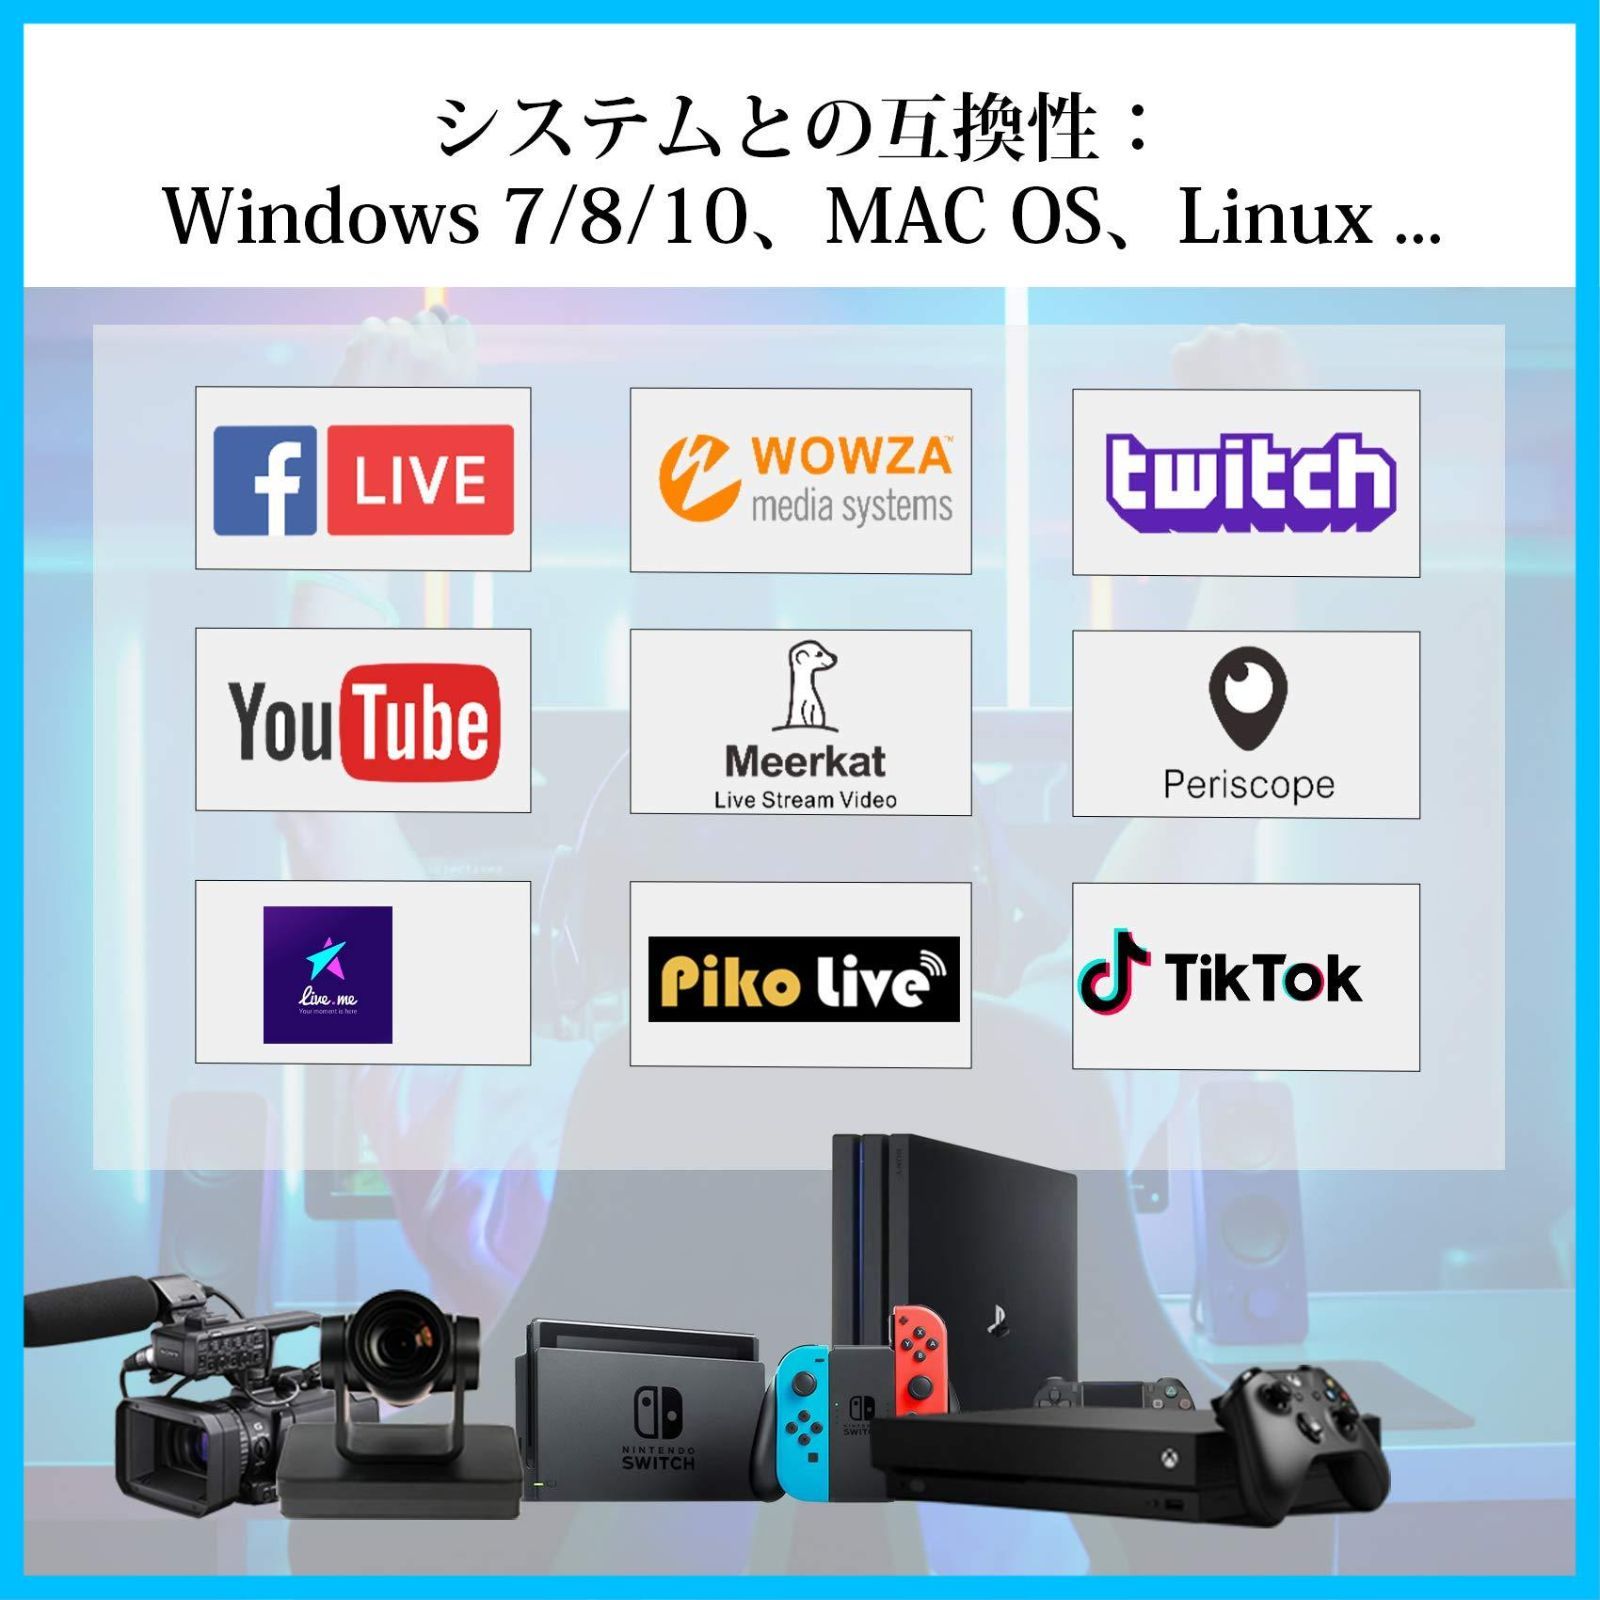 送料無料Mirabox キャプチャーボード ゲームキャプチャー USB3.0 ビデオキャプチャカード 1080P60Hz ゲーム実況生配信、画面共有、 録画、ライブ会議に適用 小型軽量 Xbox One、OBS Studio対応 電源不要 - メルカリ